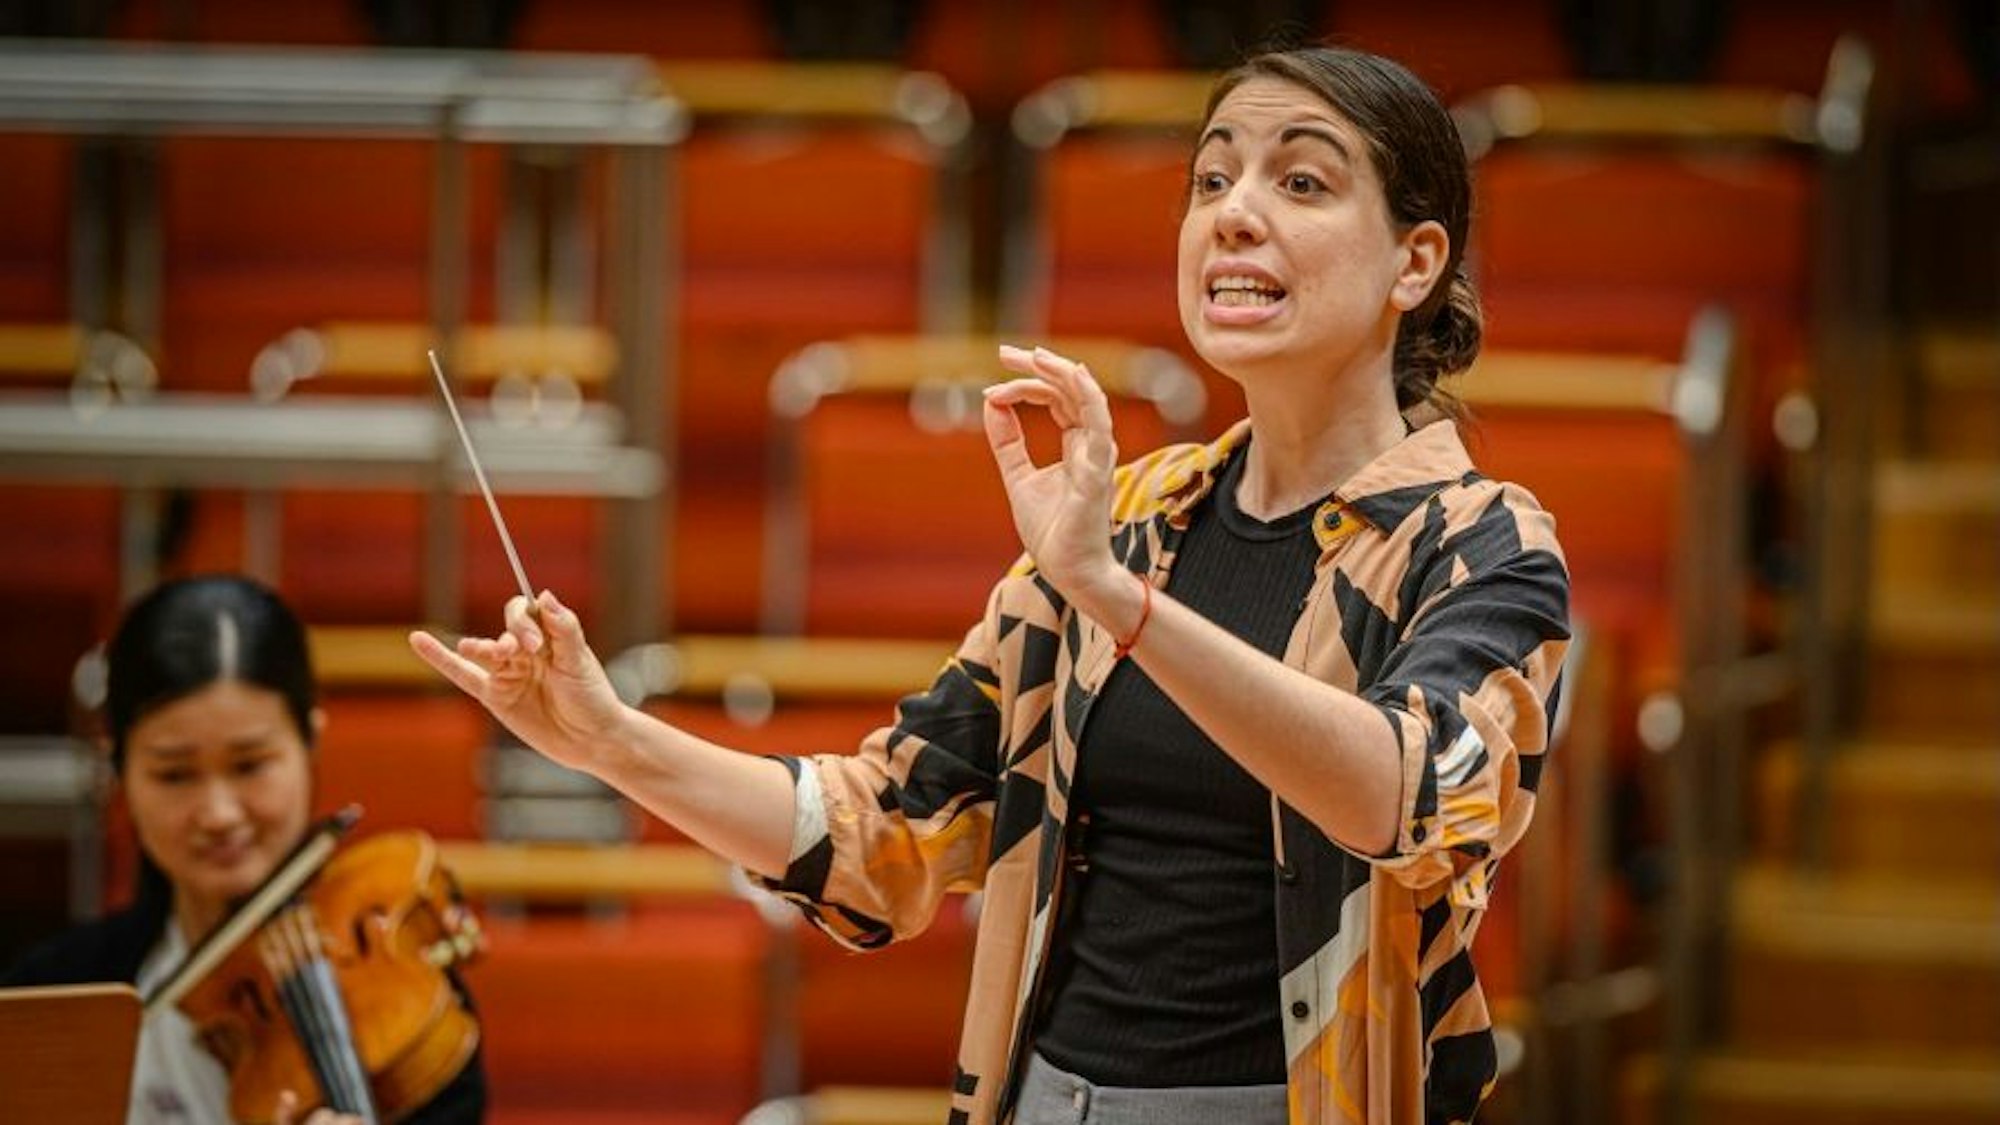 Die Dirigentin Anna Castro Grinstein in der Kölner Philharmonie. Sie schaut auf ihr Orchester und hat die Hände zum Dirigat erhoben, in der rechten Hand hält sie einen Taktstock.